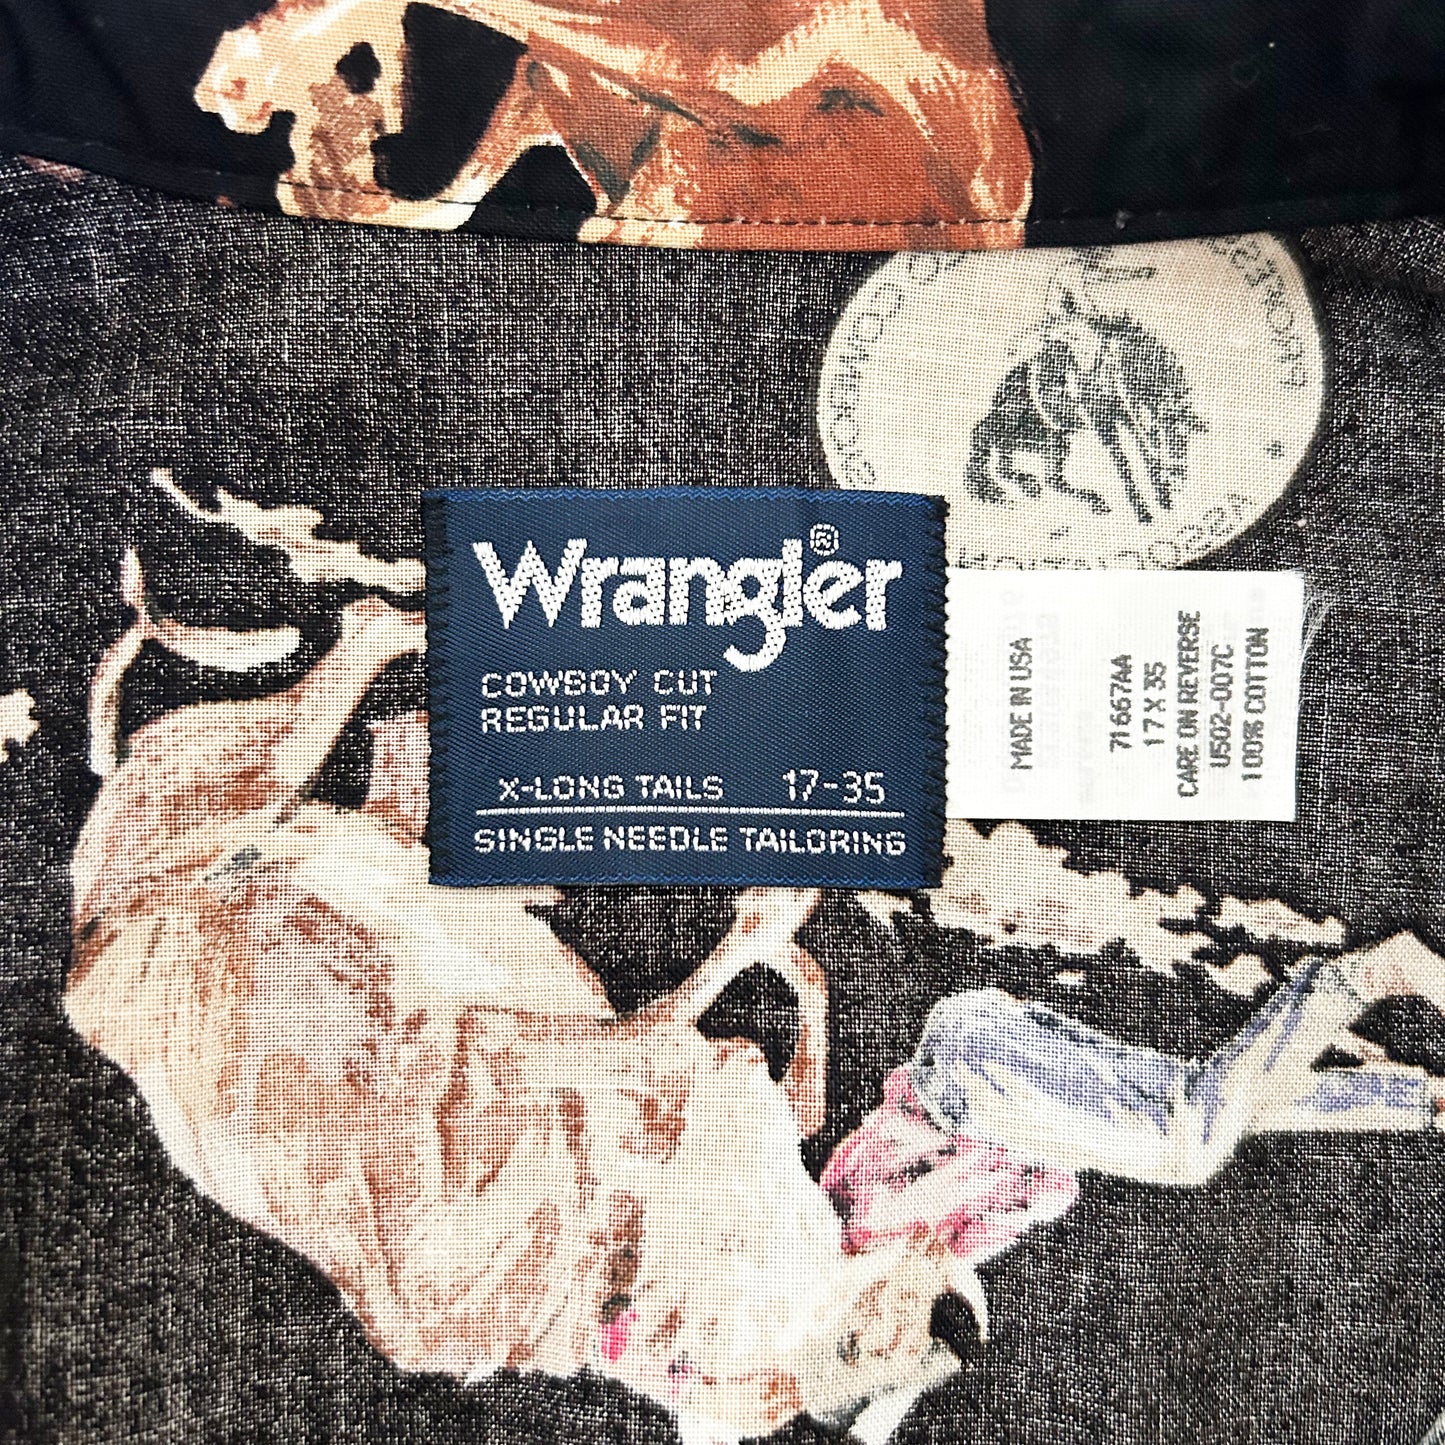 Wrangler patterned shirt